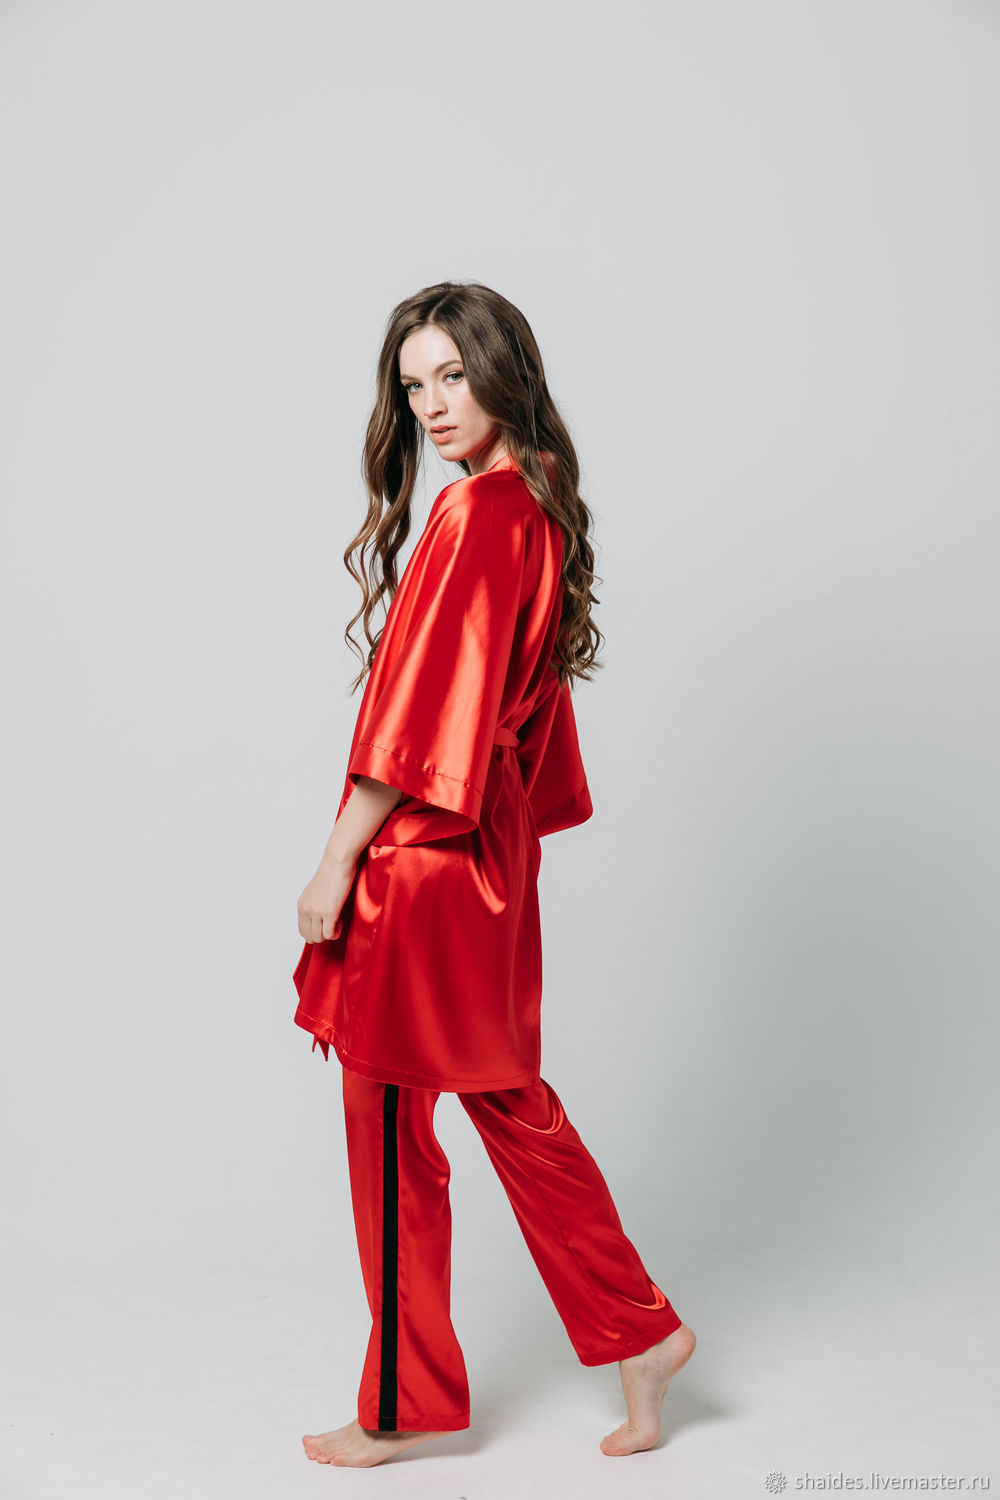 Красная шелковая пижама женская